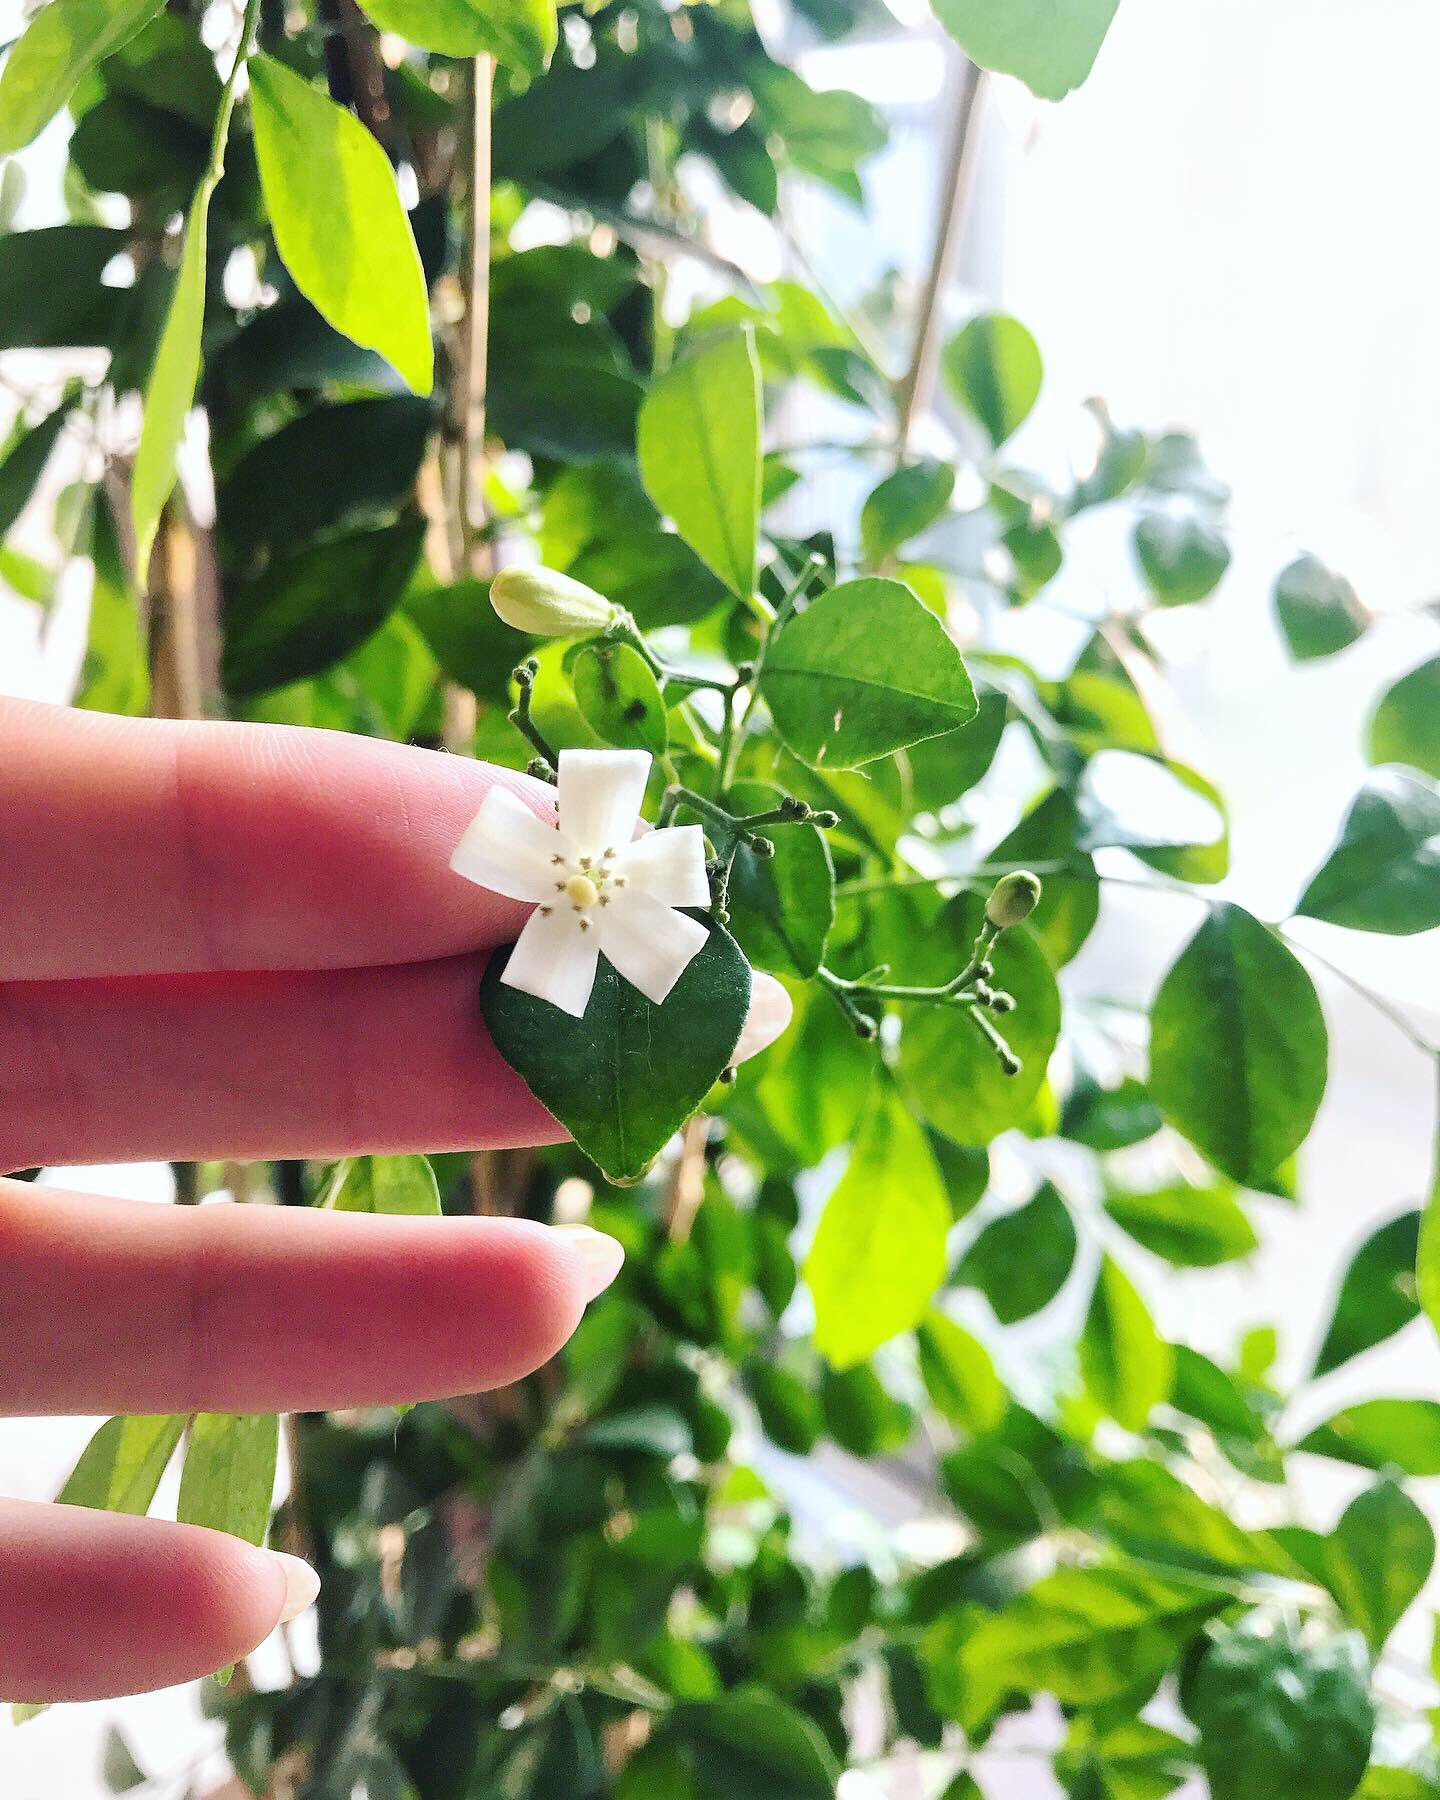 ホシユカ 自分の運気を知ろう Sur Twitter シルクジャスミン咲いた 思ったより可愛い 大きく育ってウチに来た時は165センチくらいだったのに今や190センチ弱 これを機にたくさん花咲いてほしい 観葉植物 グリーン シルクジャスミン 剪定 花